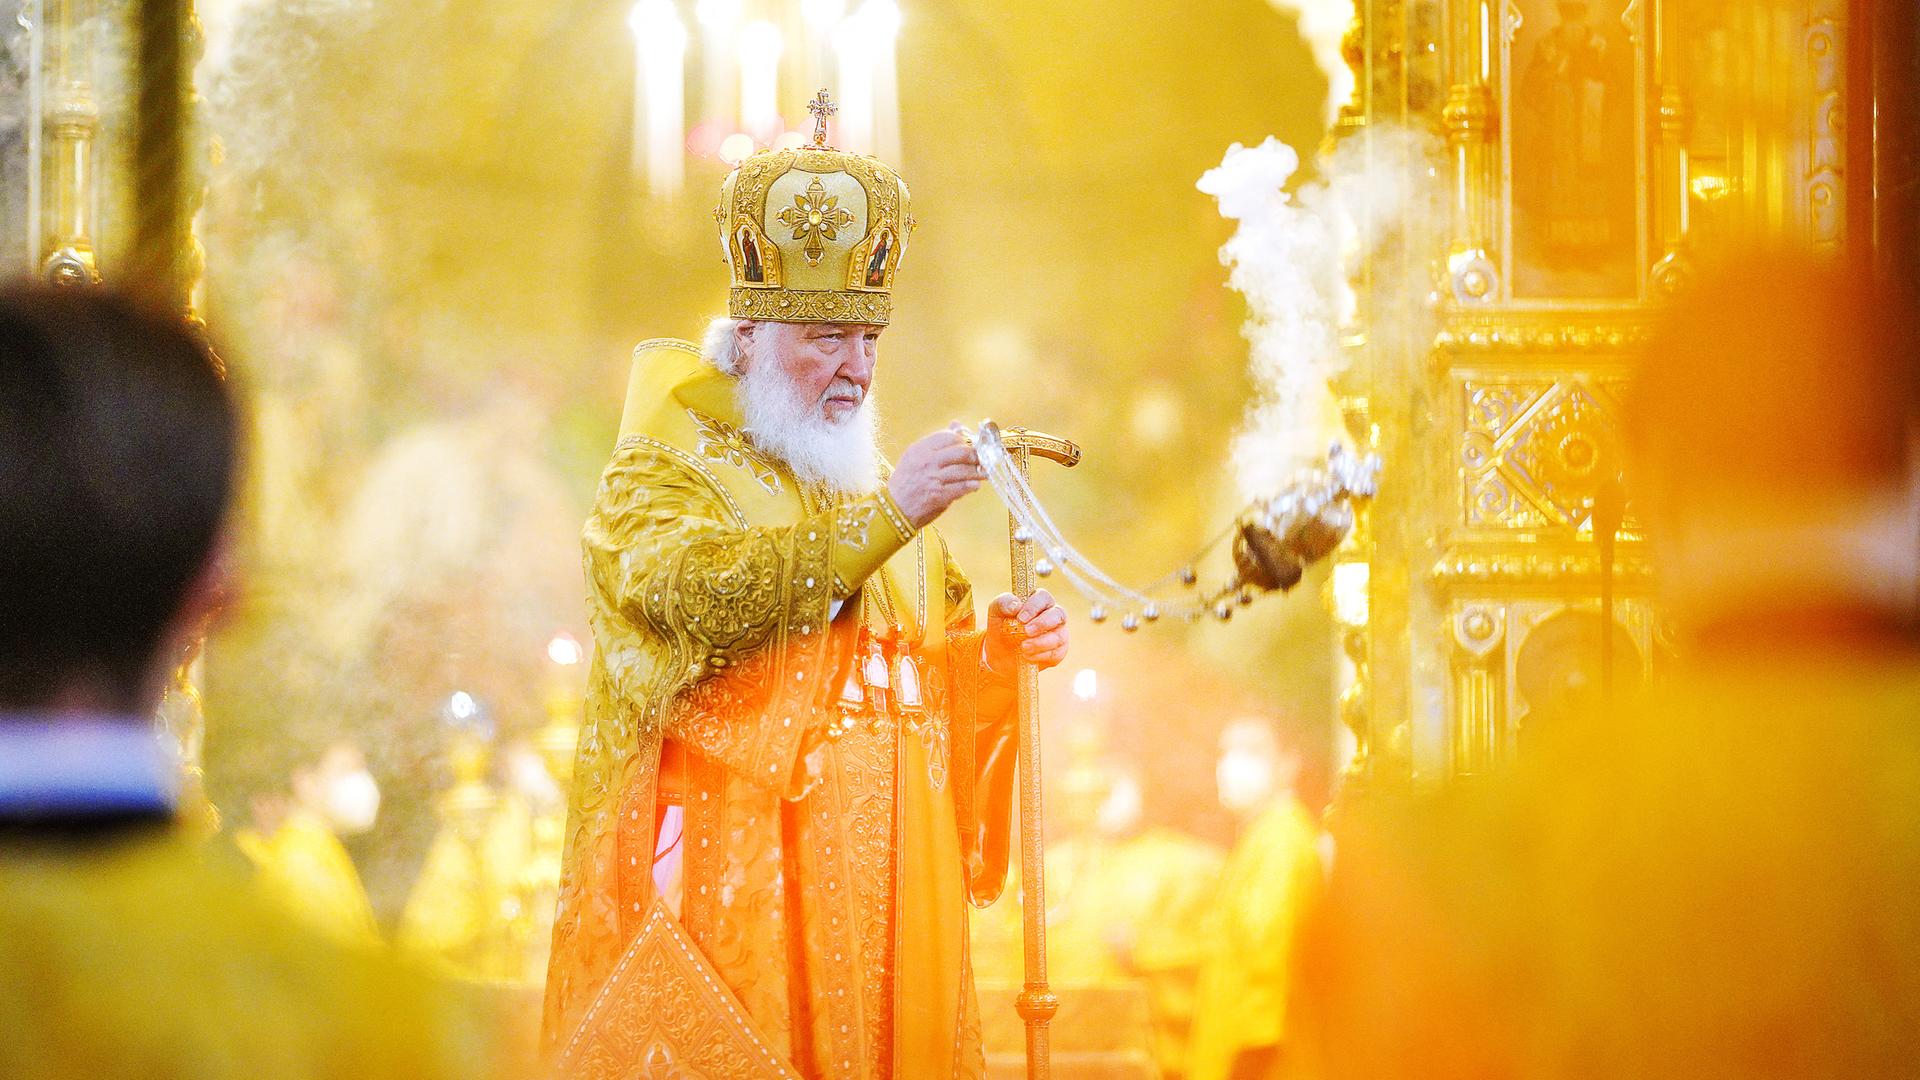 Das Oberhaupt der russisch-orthodoxen Kirche schwingt den Weihrauchkessel während eines Gottesdienstes.